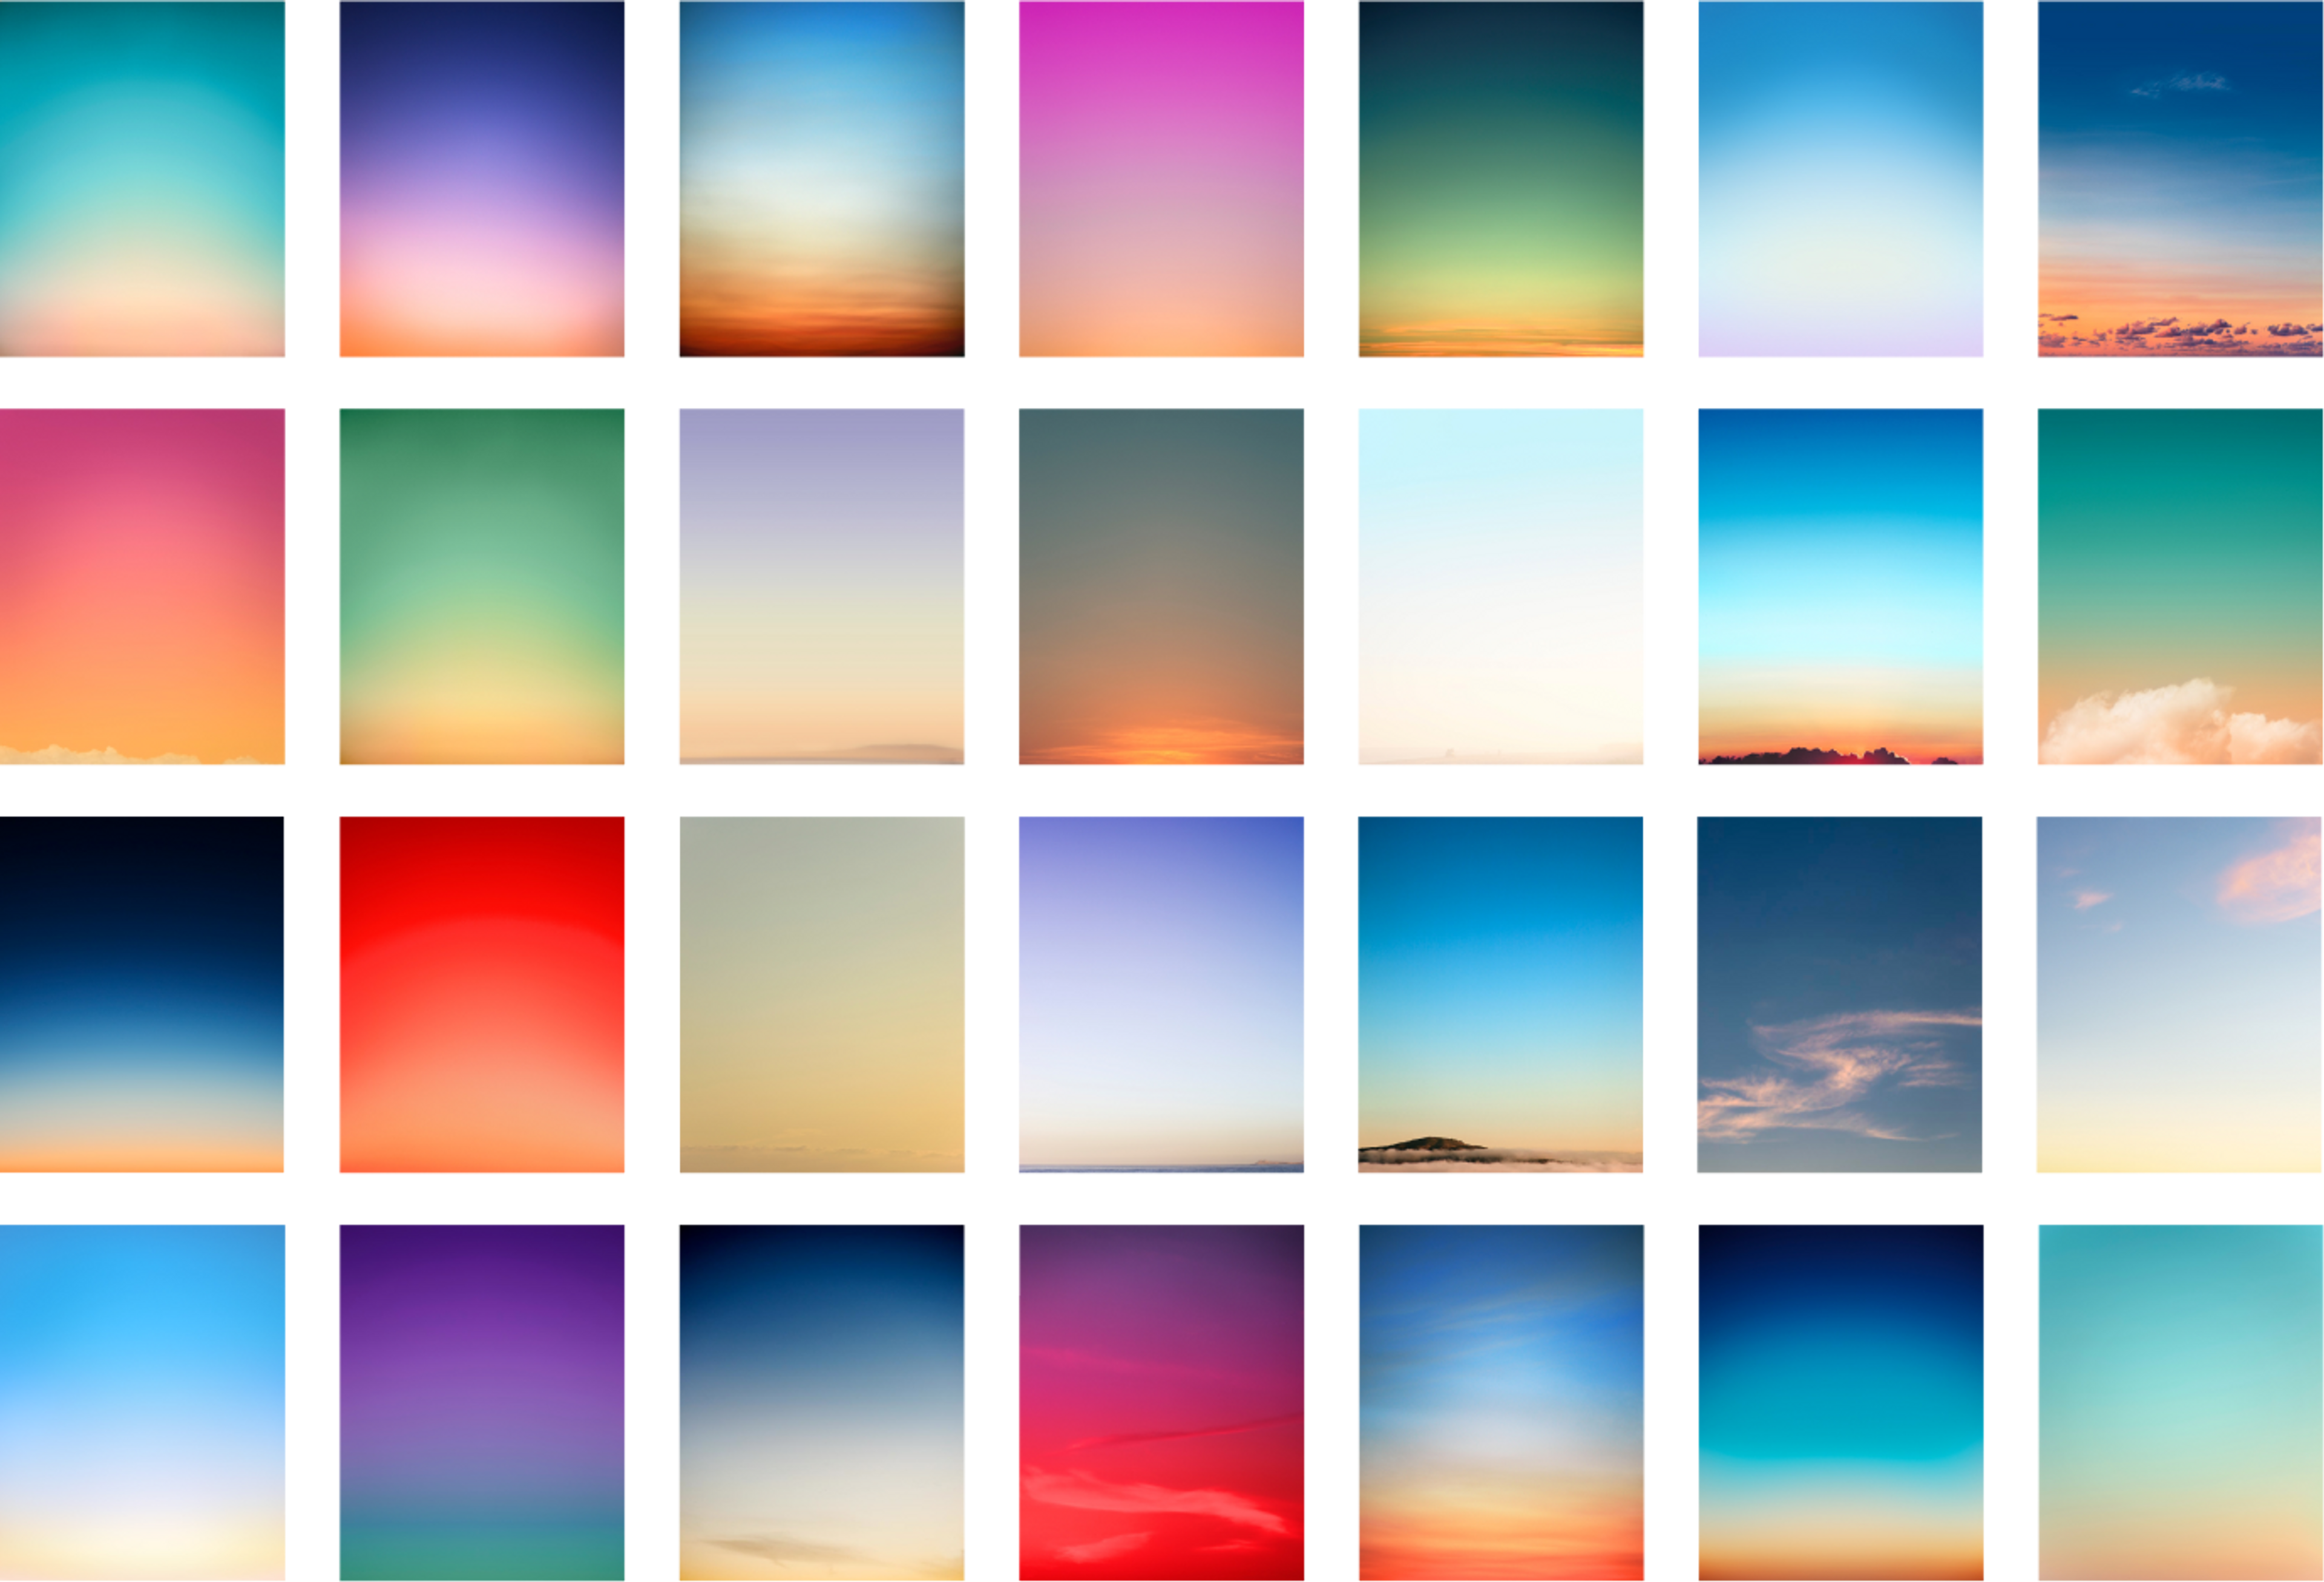 مجموعة من صور غروب الشمس المختلفة، مع العديد من التدرّجات والألوان